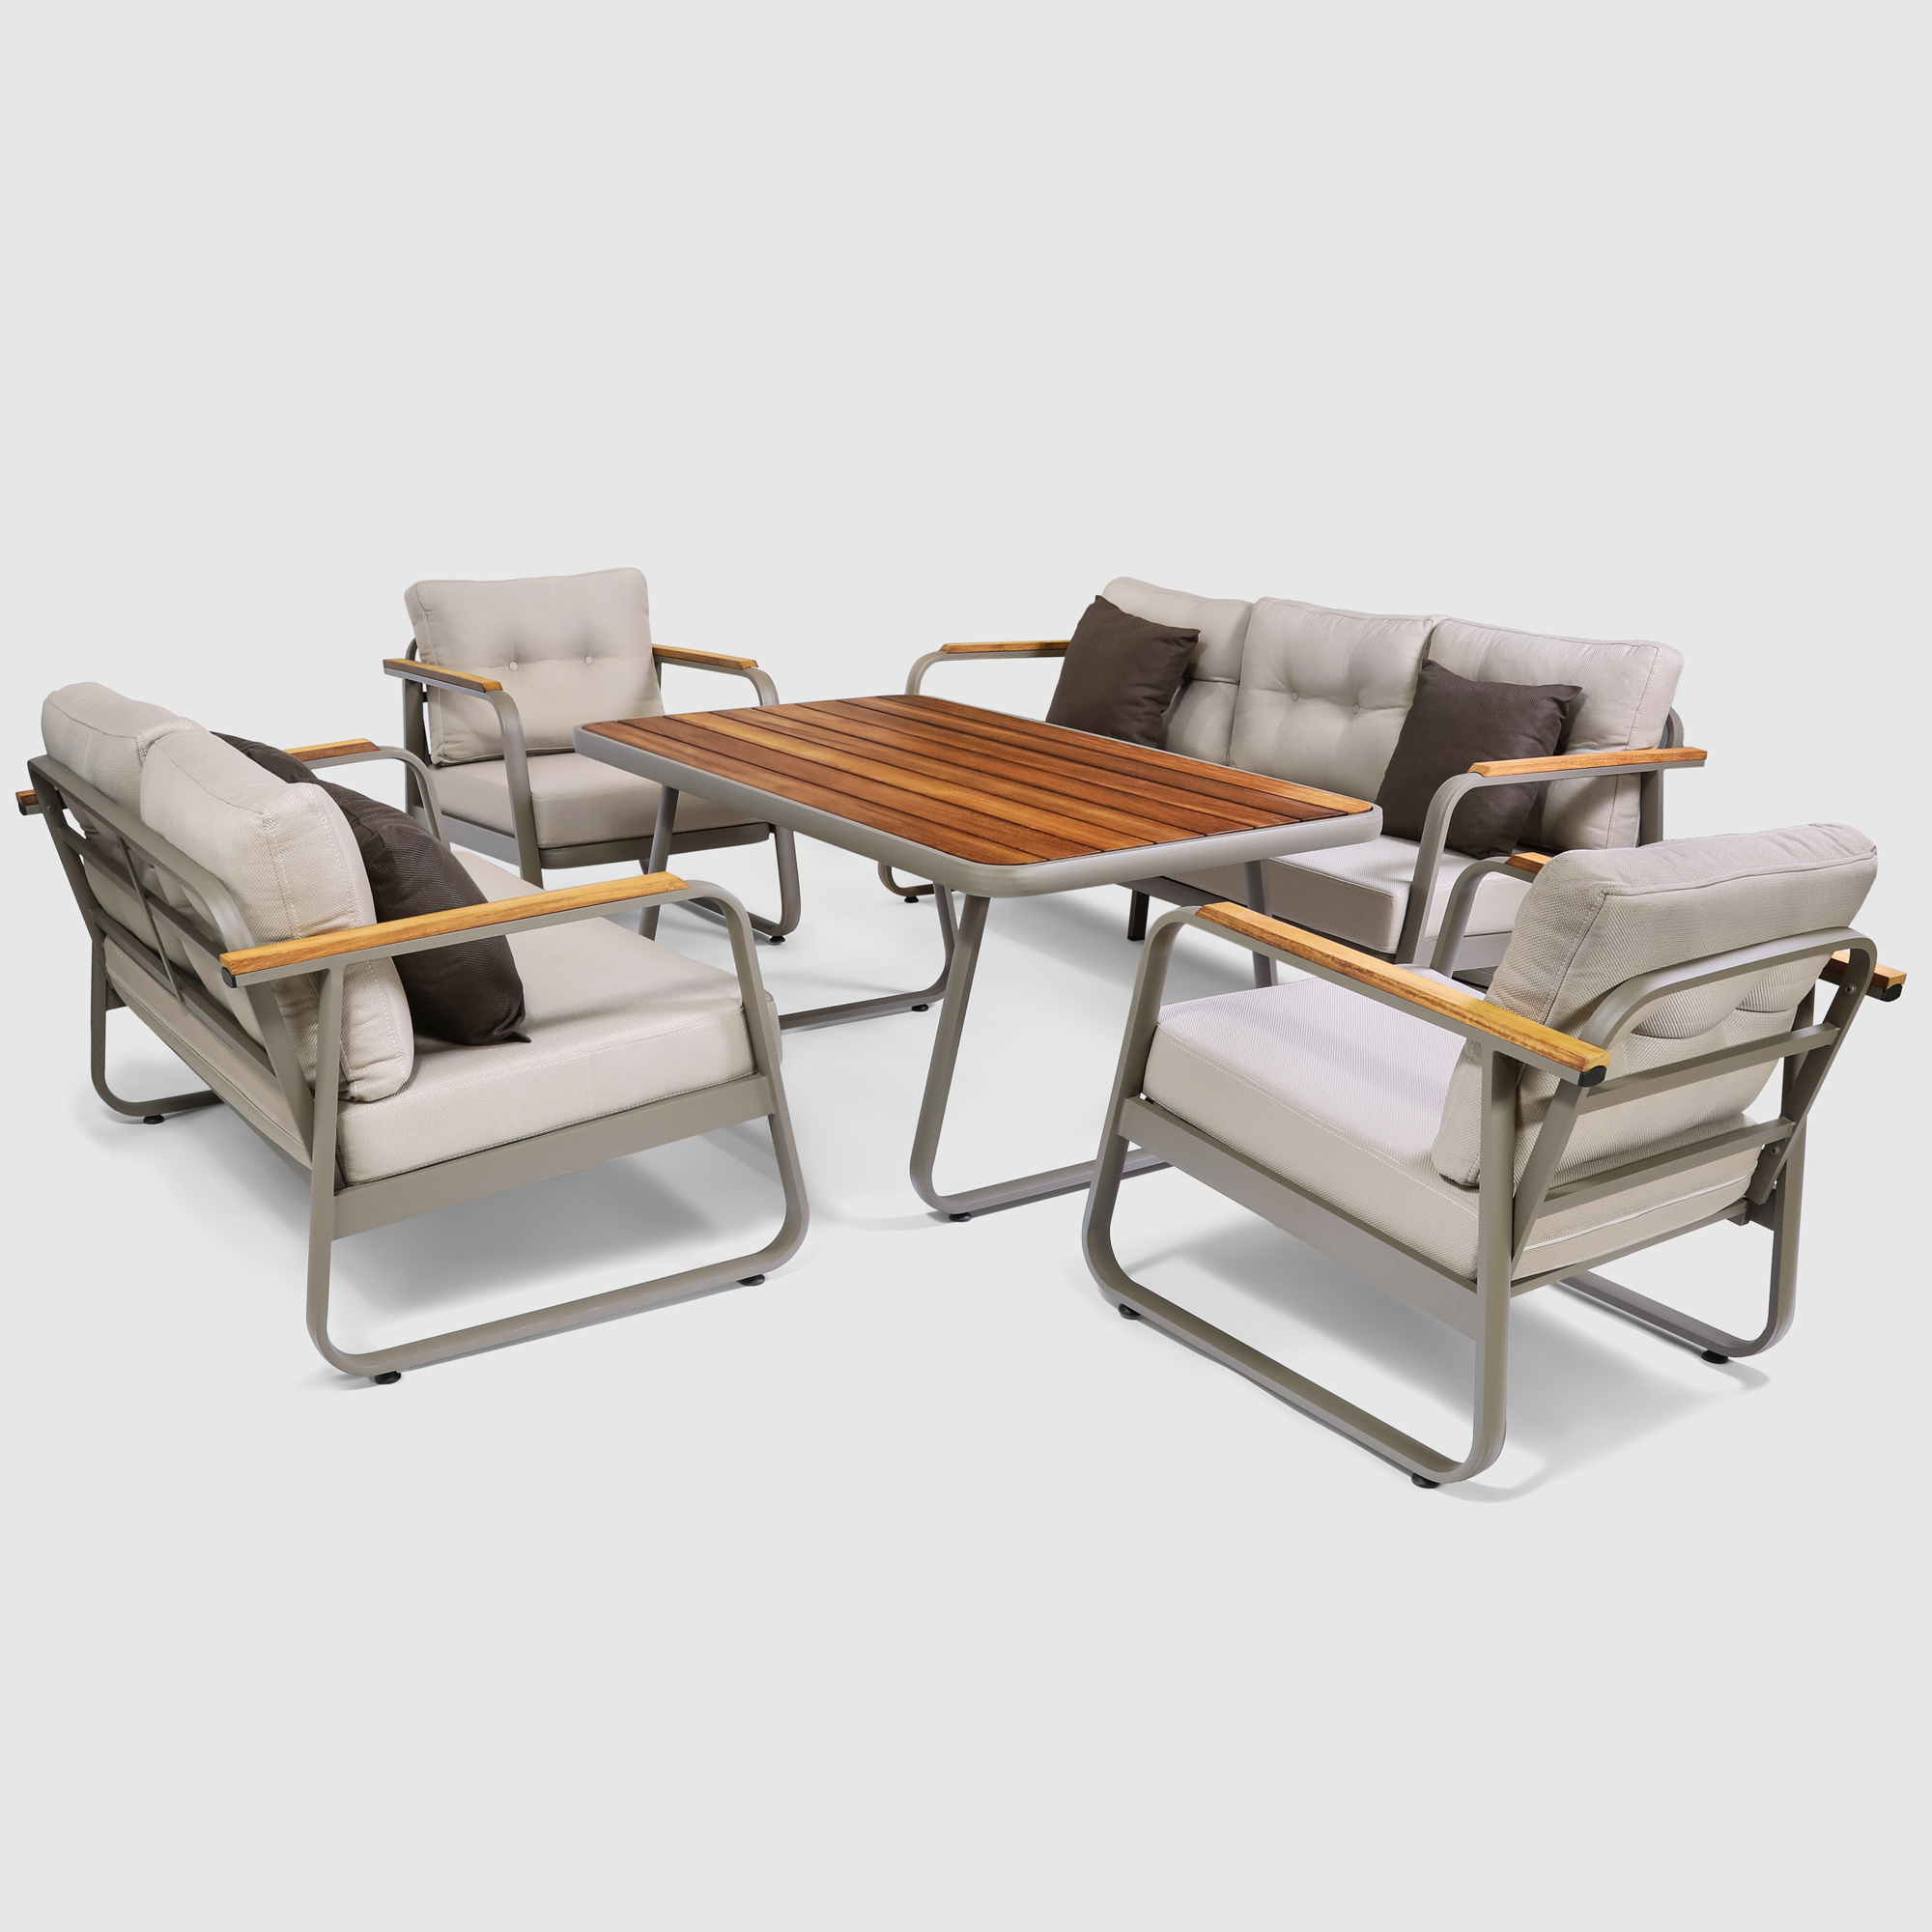 Комплект мебели Alora Garden Rio 2 дивана + 2 кресла + столик, цвет серый